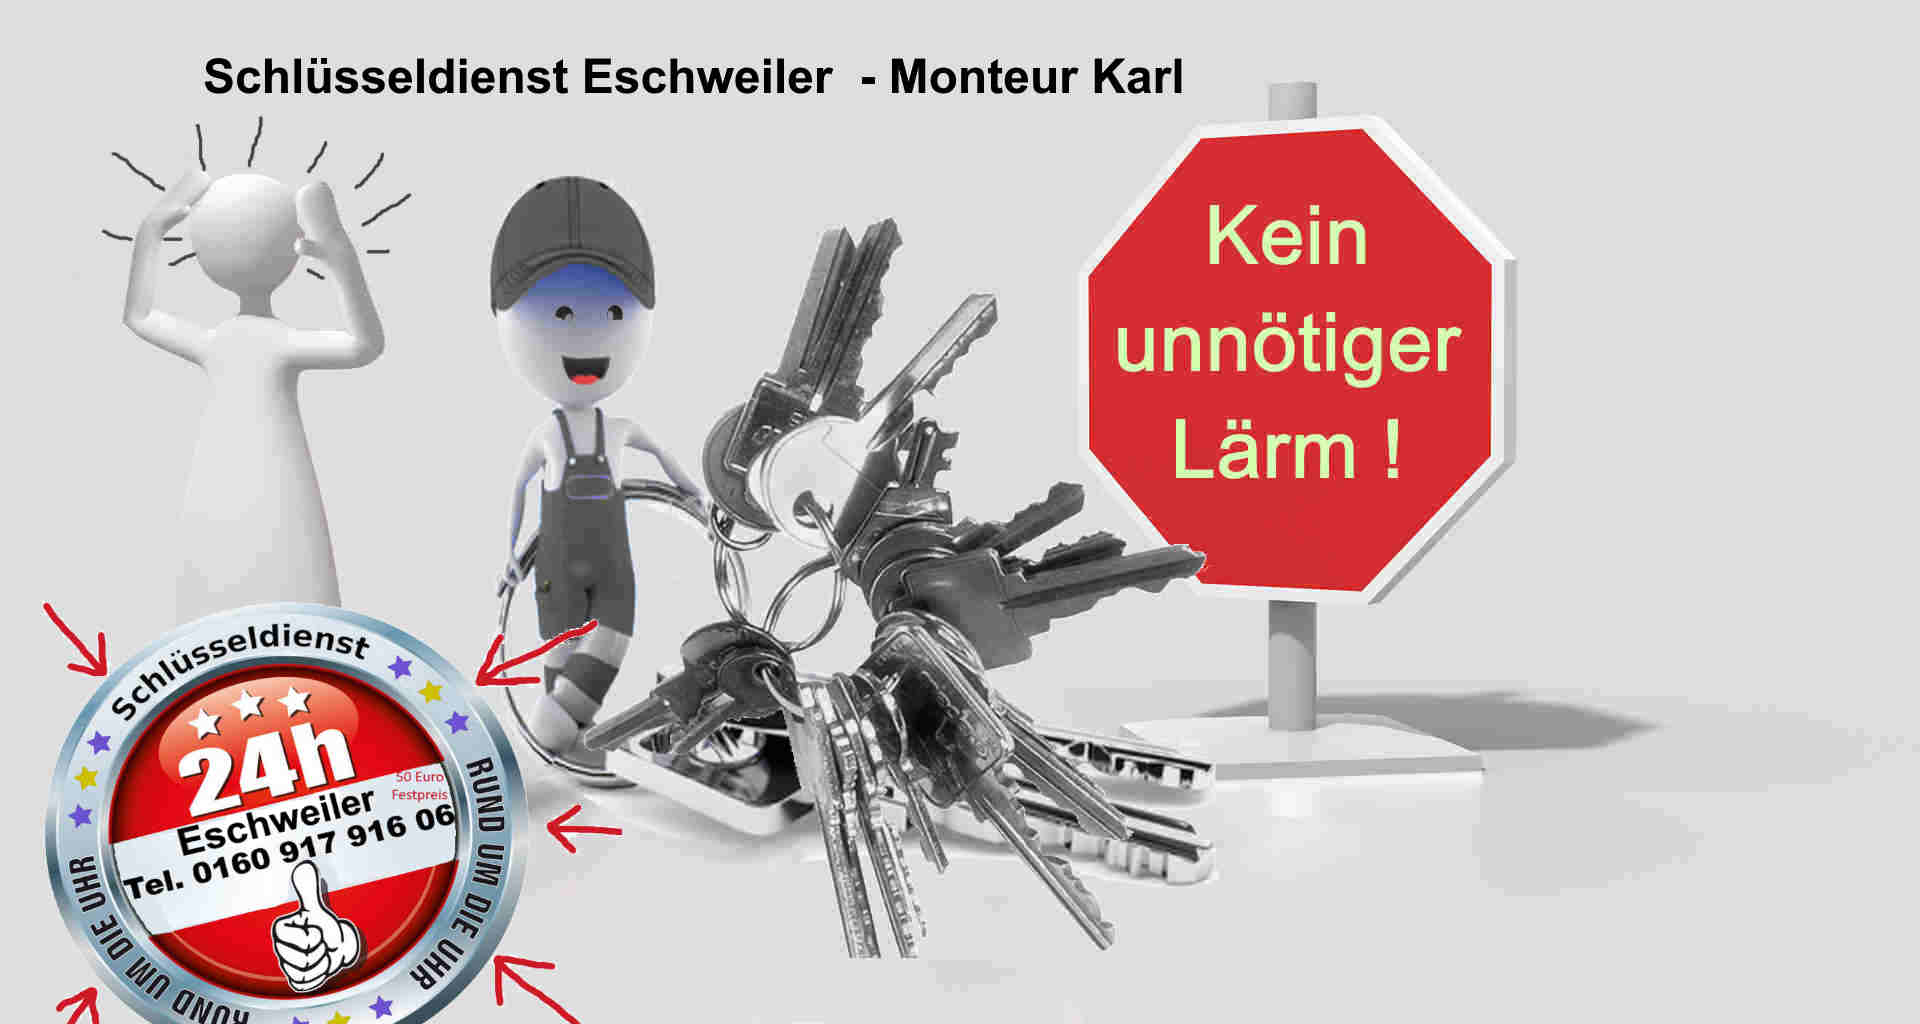 Schlüsseldienst Eschweiler - kein Lärm - Tür öffnen fast lautlos - Es geht auch anders !